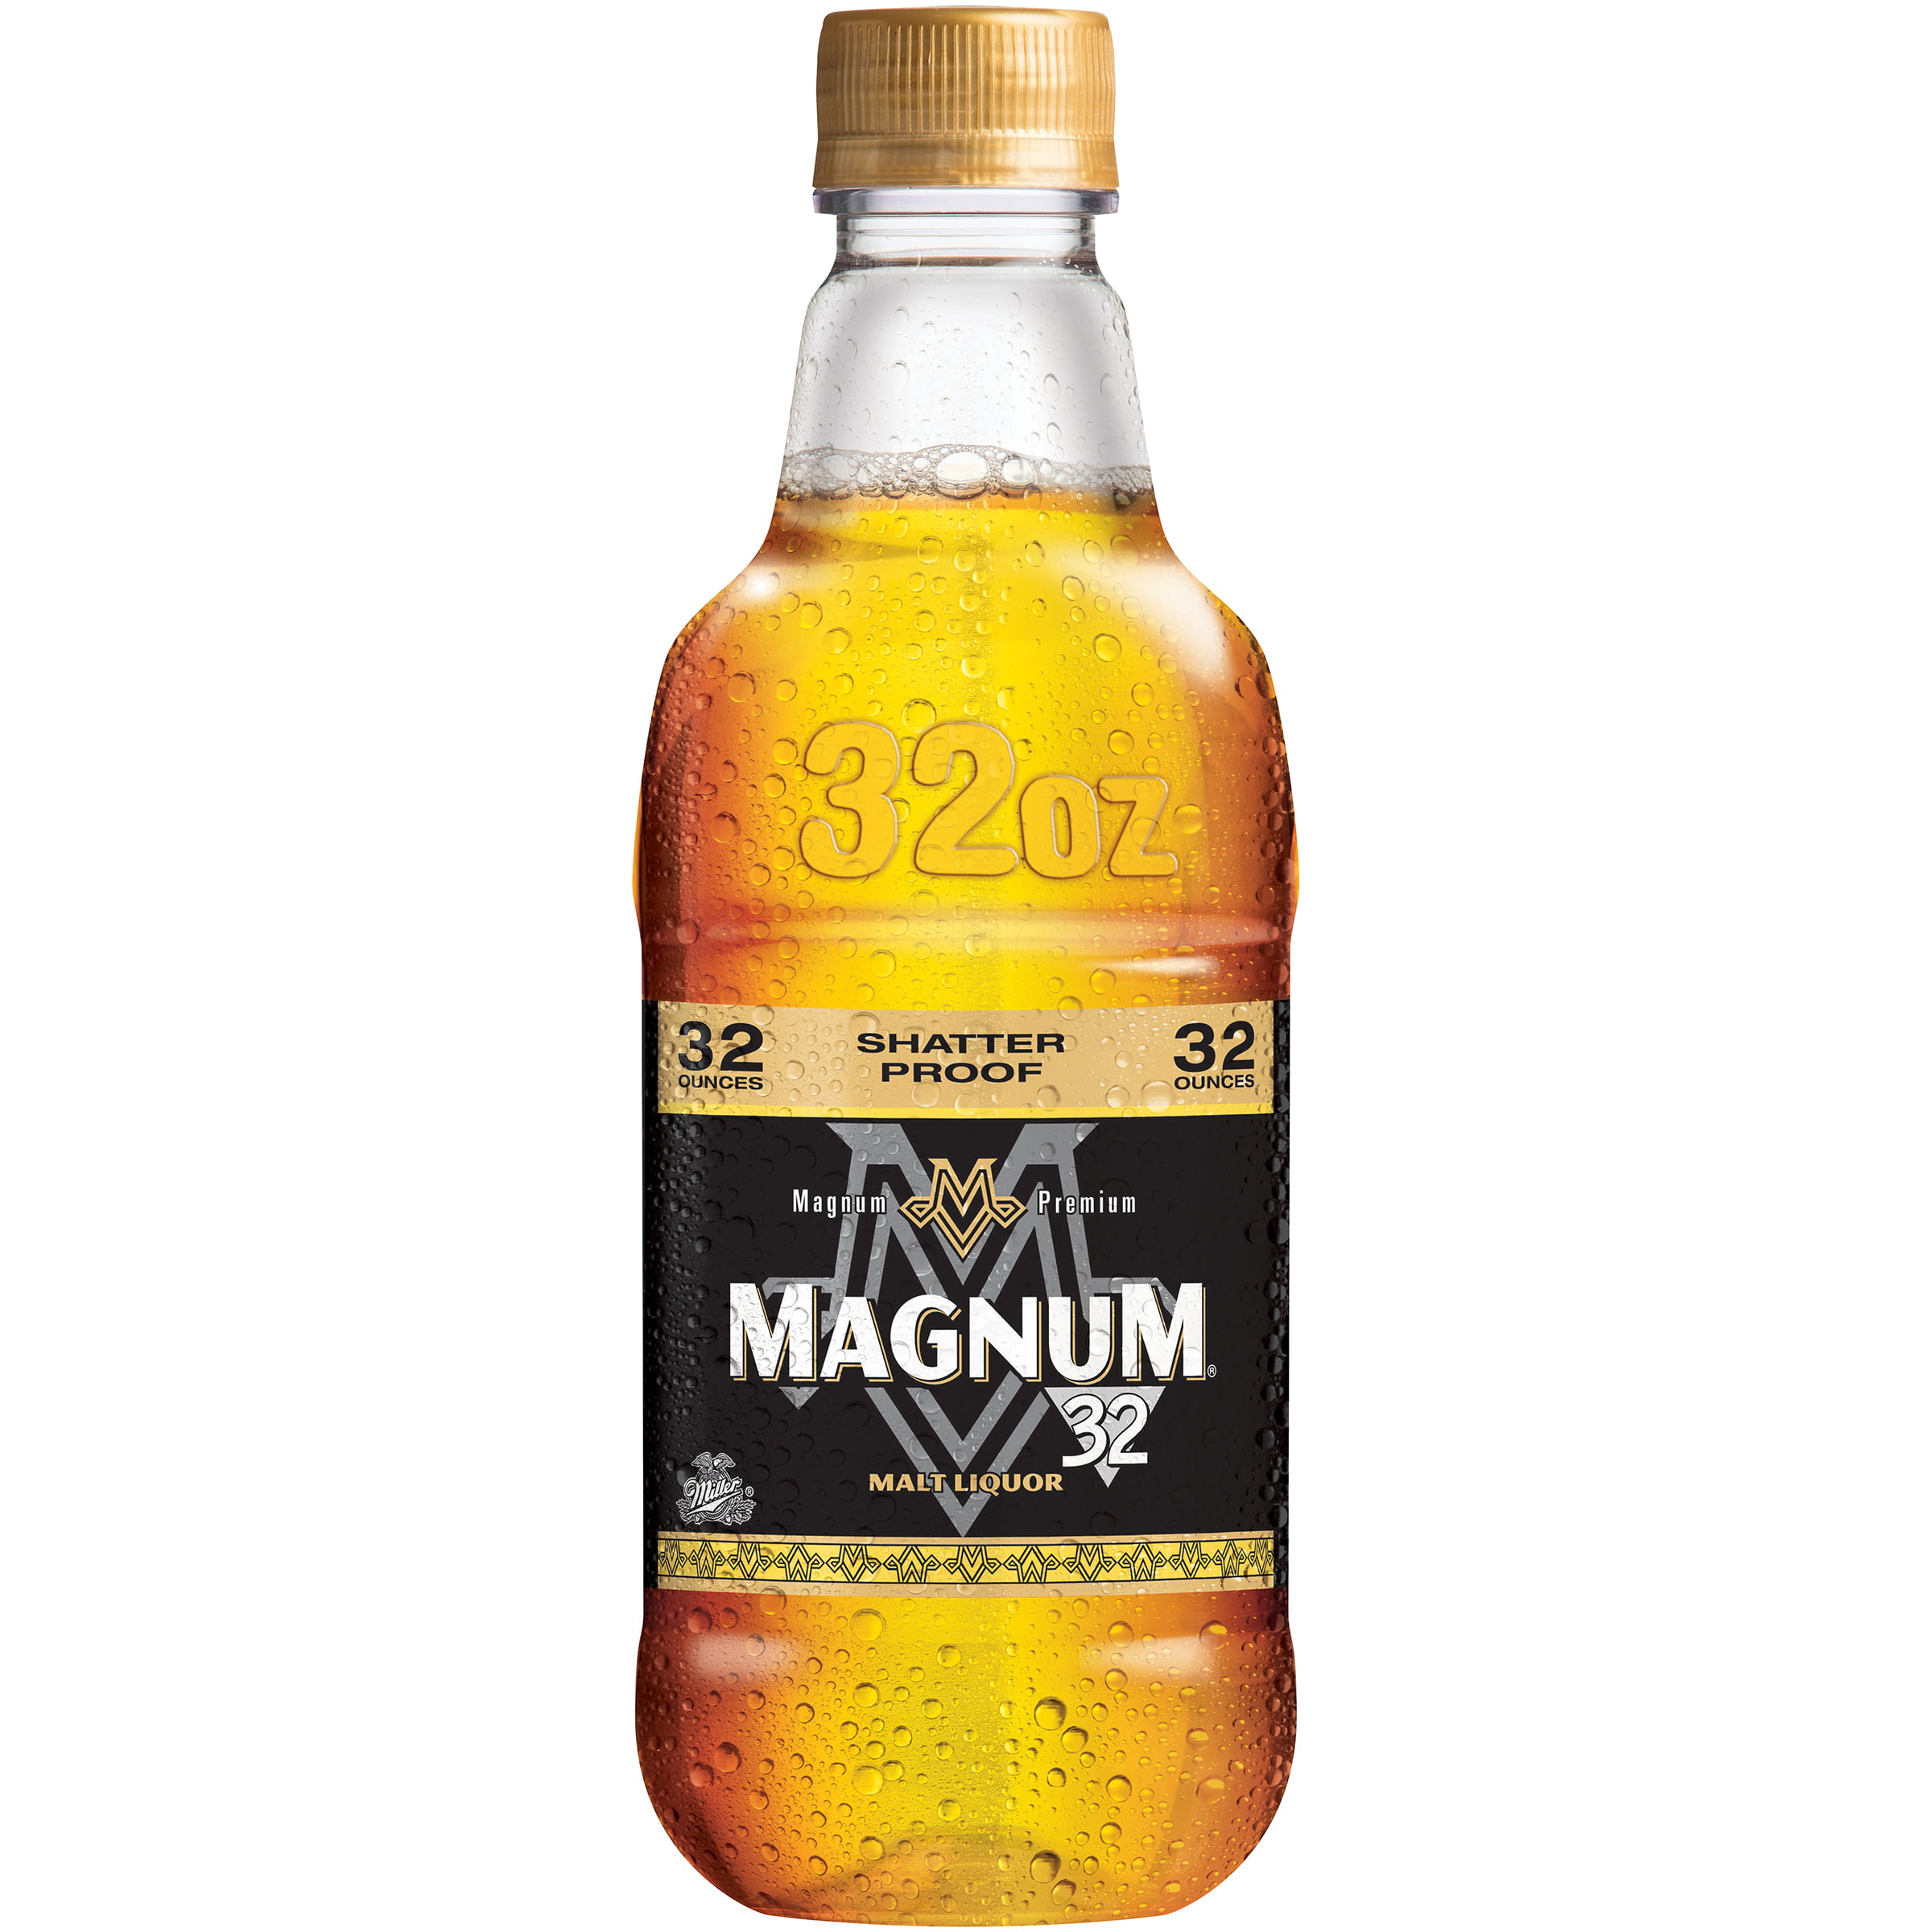 Image result for magnum premium liquor